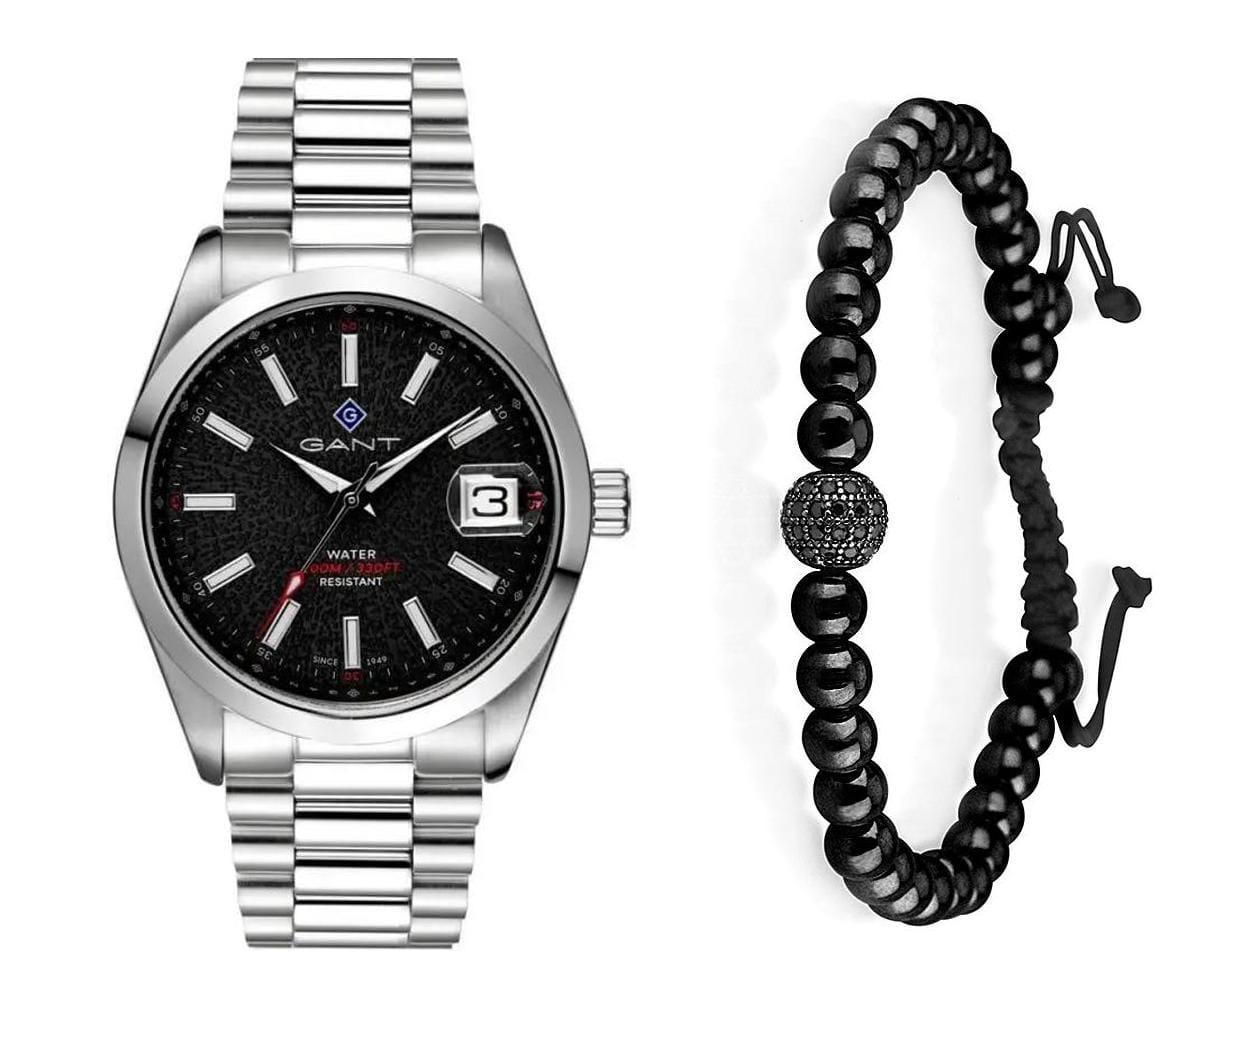 שעון יד אנלוגי לגבר gant g161002 גאנט עם צמיד כדורים שחור